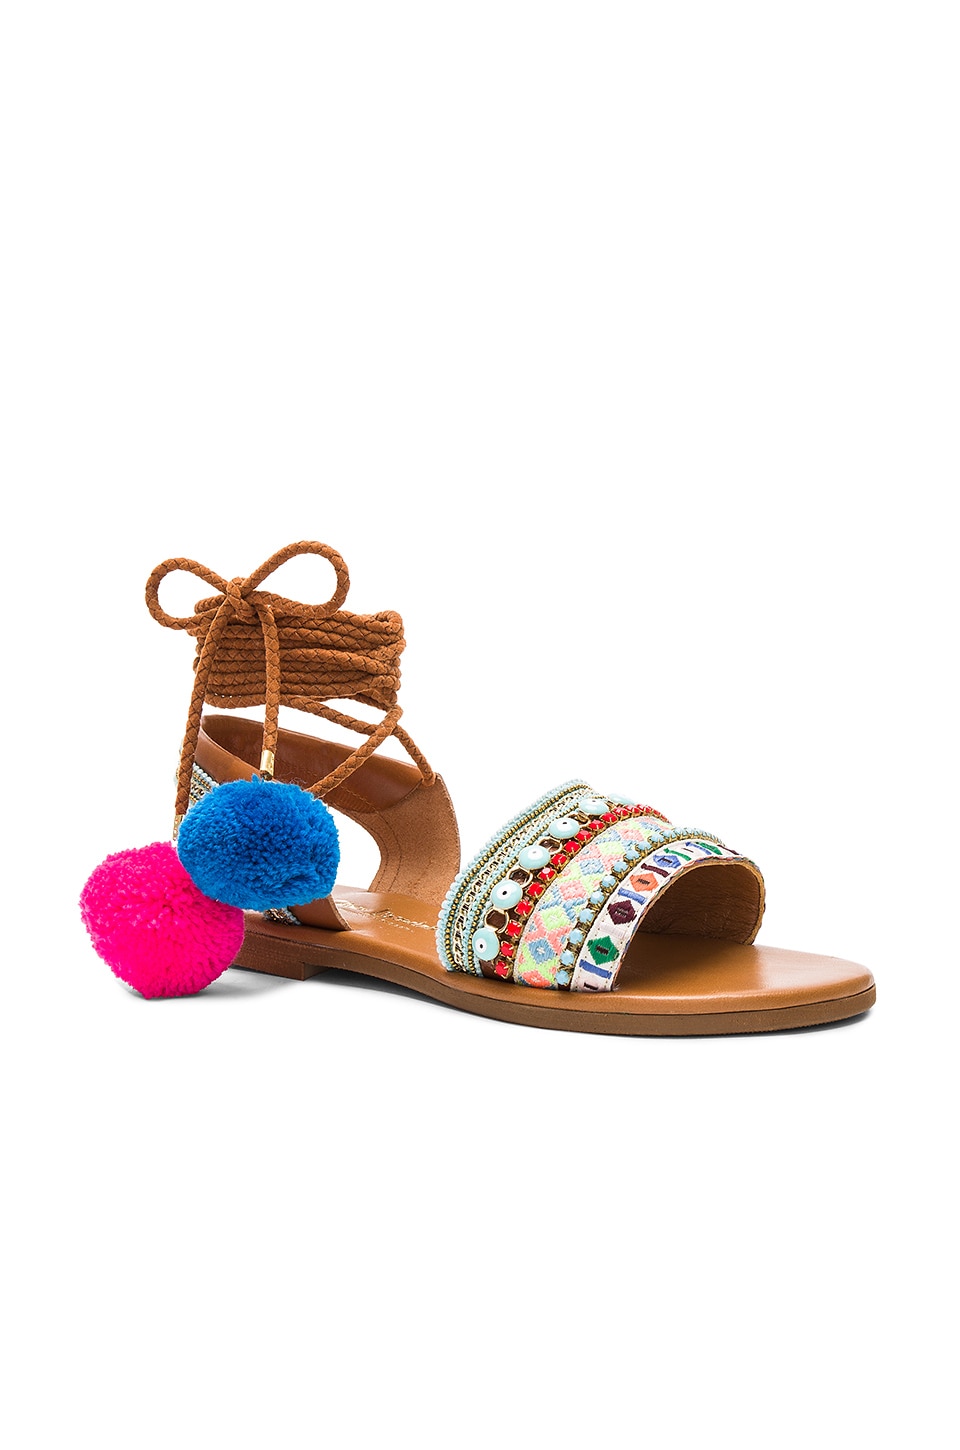 ELINA LINARDAKI La Lover Sandals in Multi | ModeSens